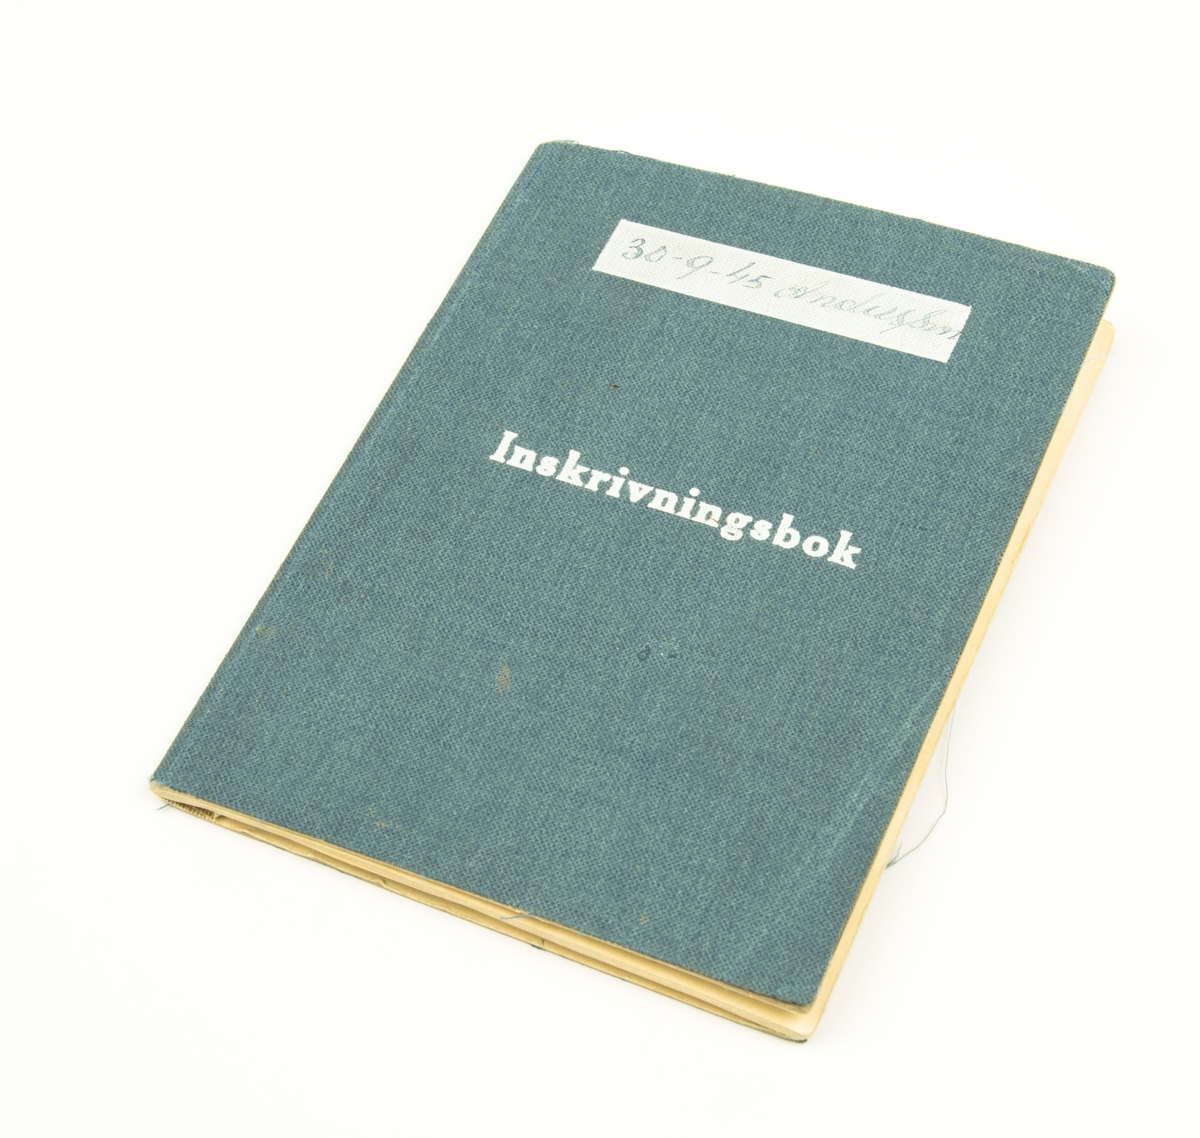 Inskrivningsbok vilken tillhört Birger Andersson. I boken står skrivet information från 1942 fram till 1963.
I fickan längst bak i boken ligger en "Bilaga till inskrivningsbok" samt en "Terminslönebok" från 1945. Inget står skrivet i terminslöneboken.